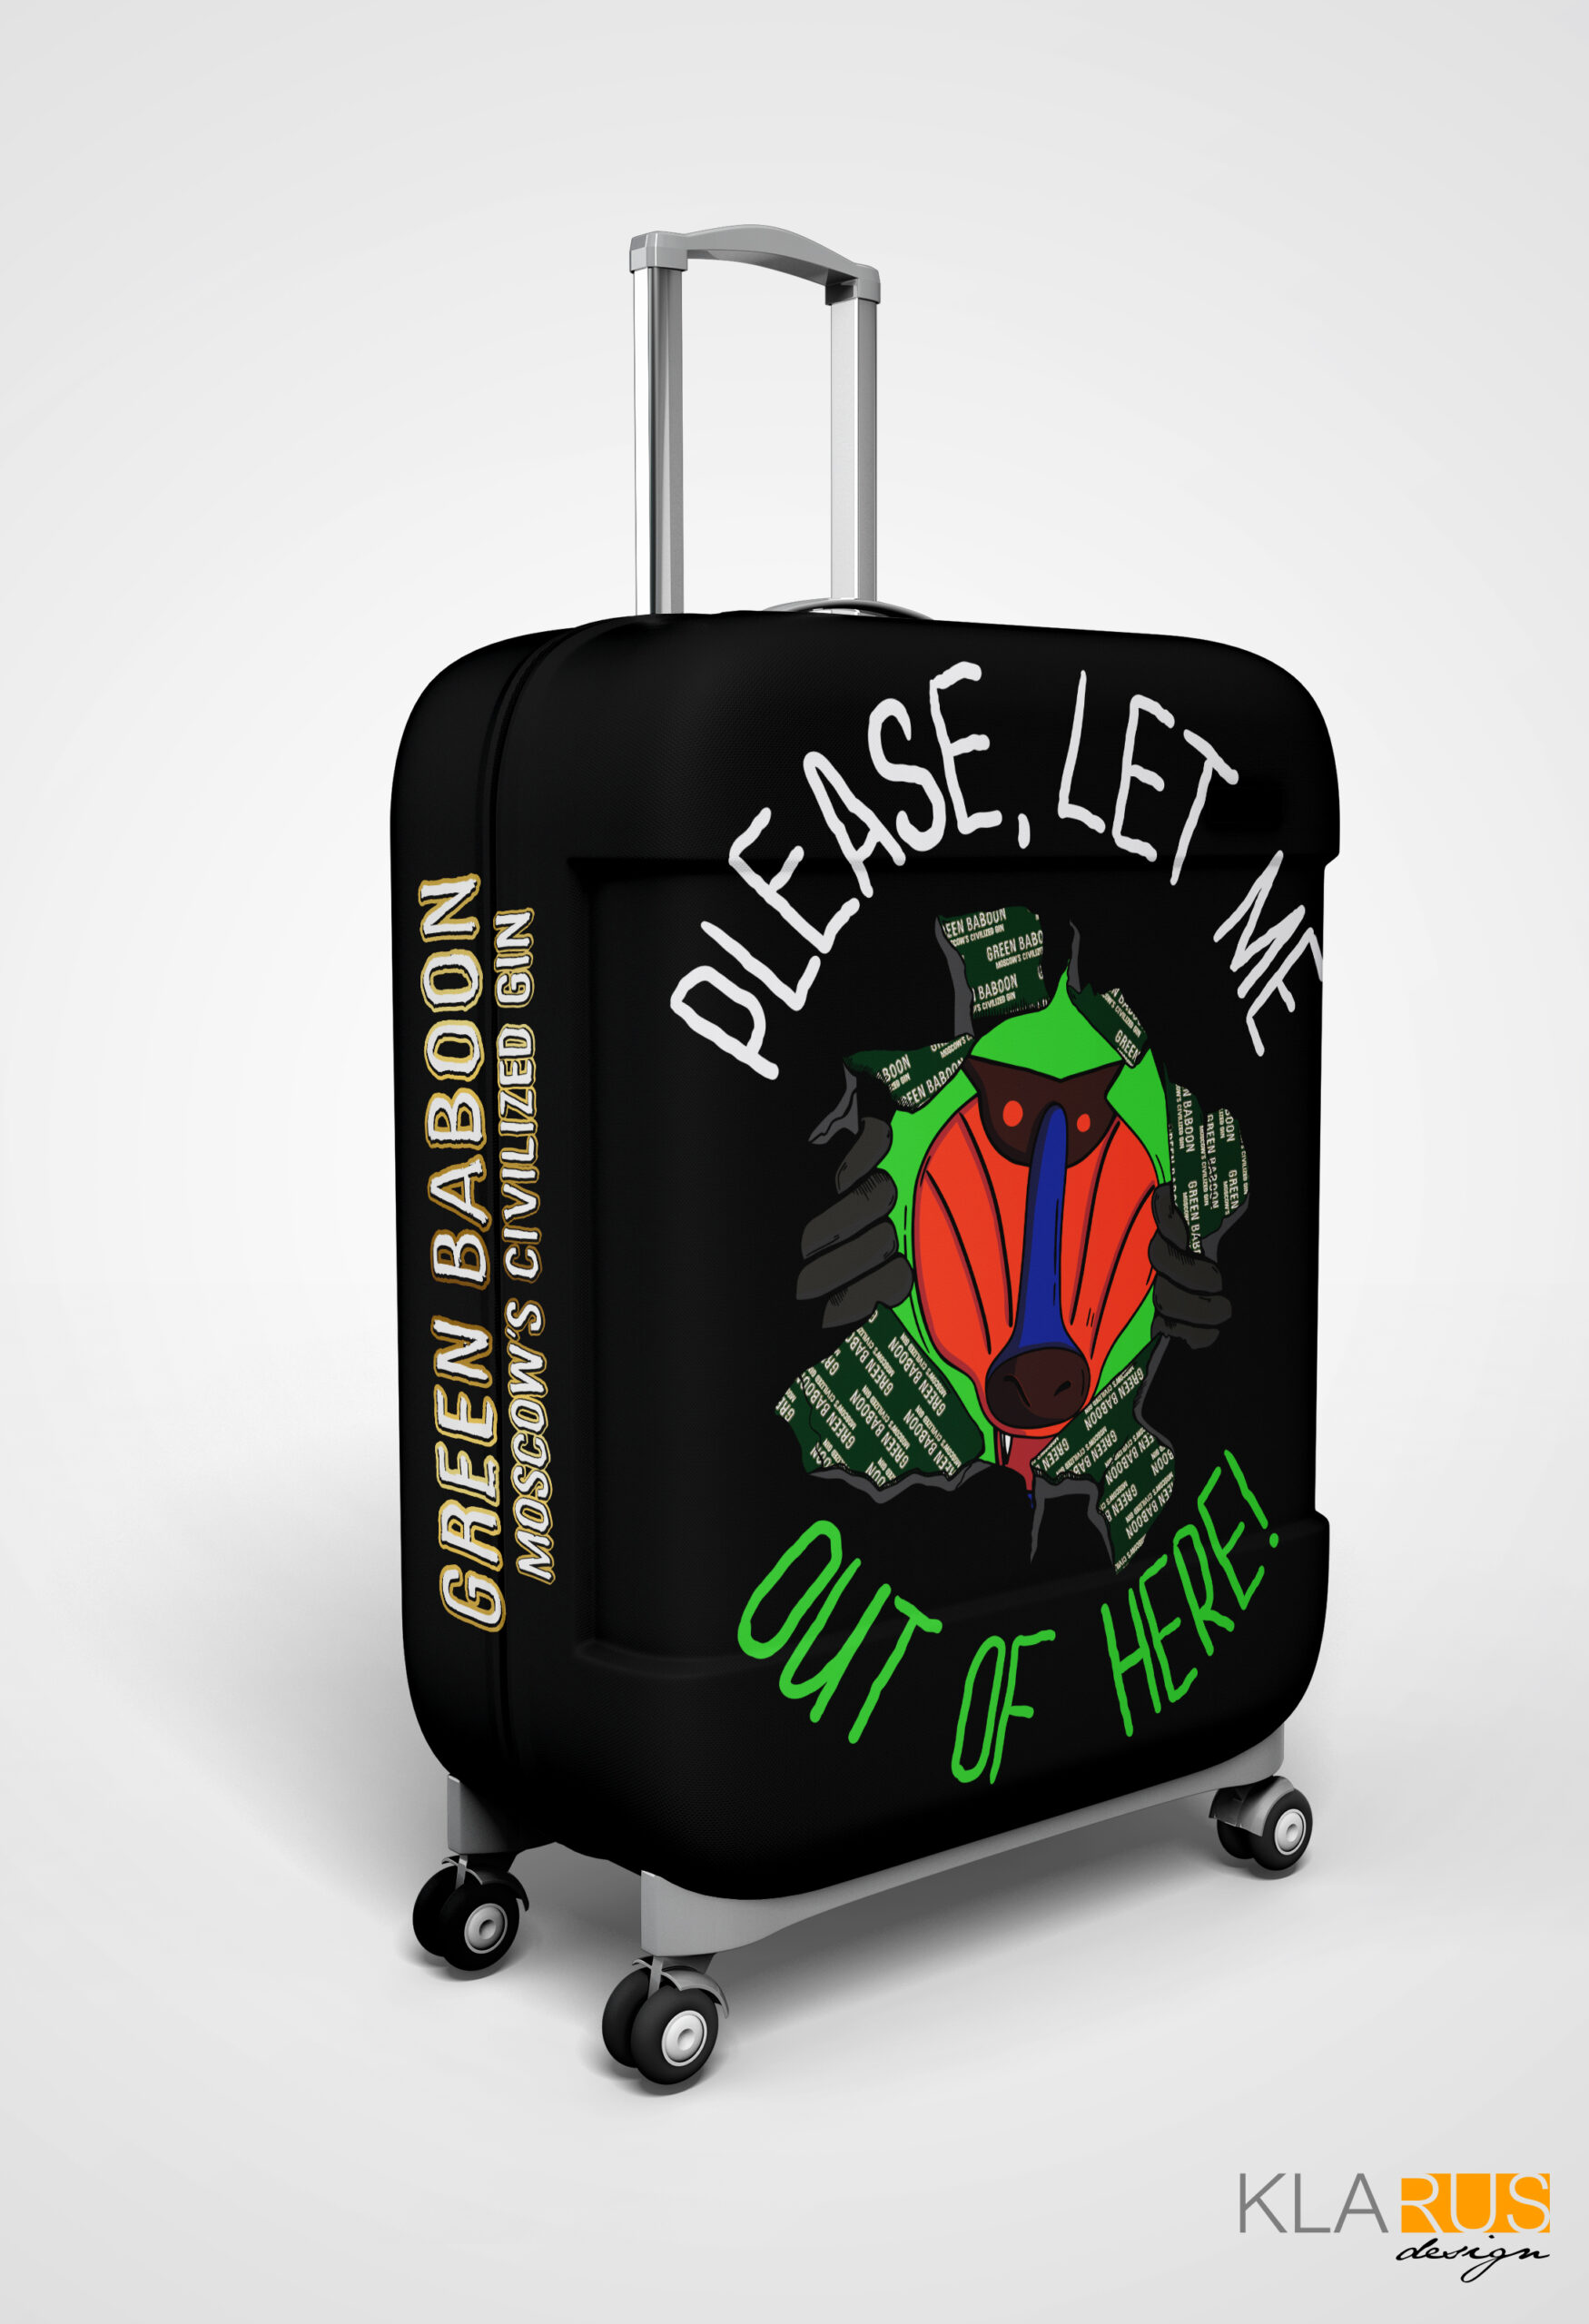 Чехол на чемодан для бренда Green Baboon 5